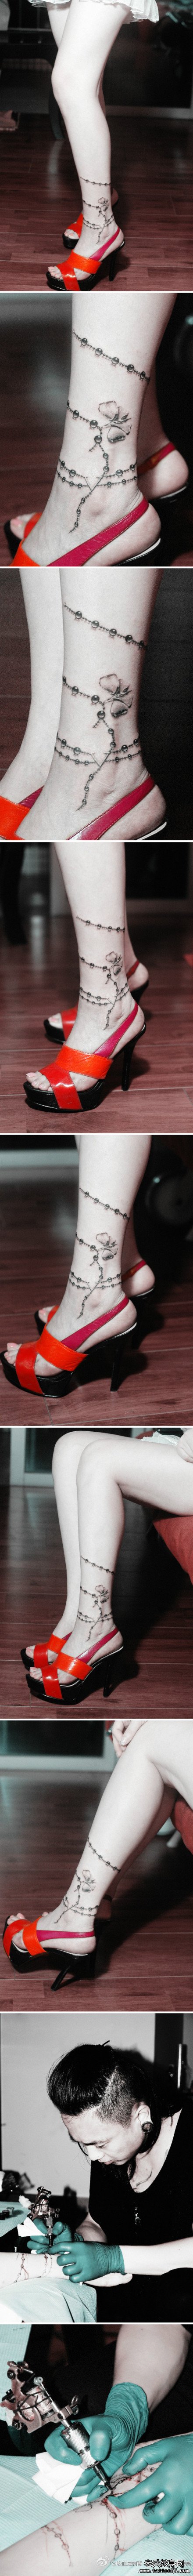 美女腿部潮流精美的脚链纹身图案